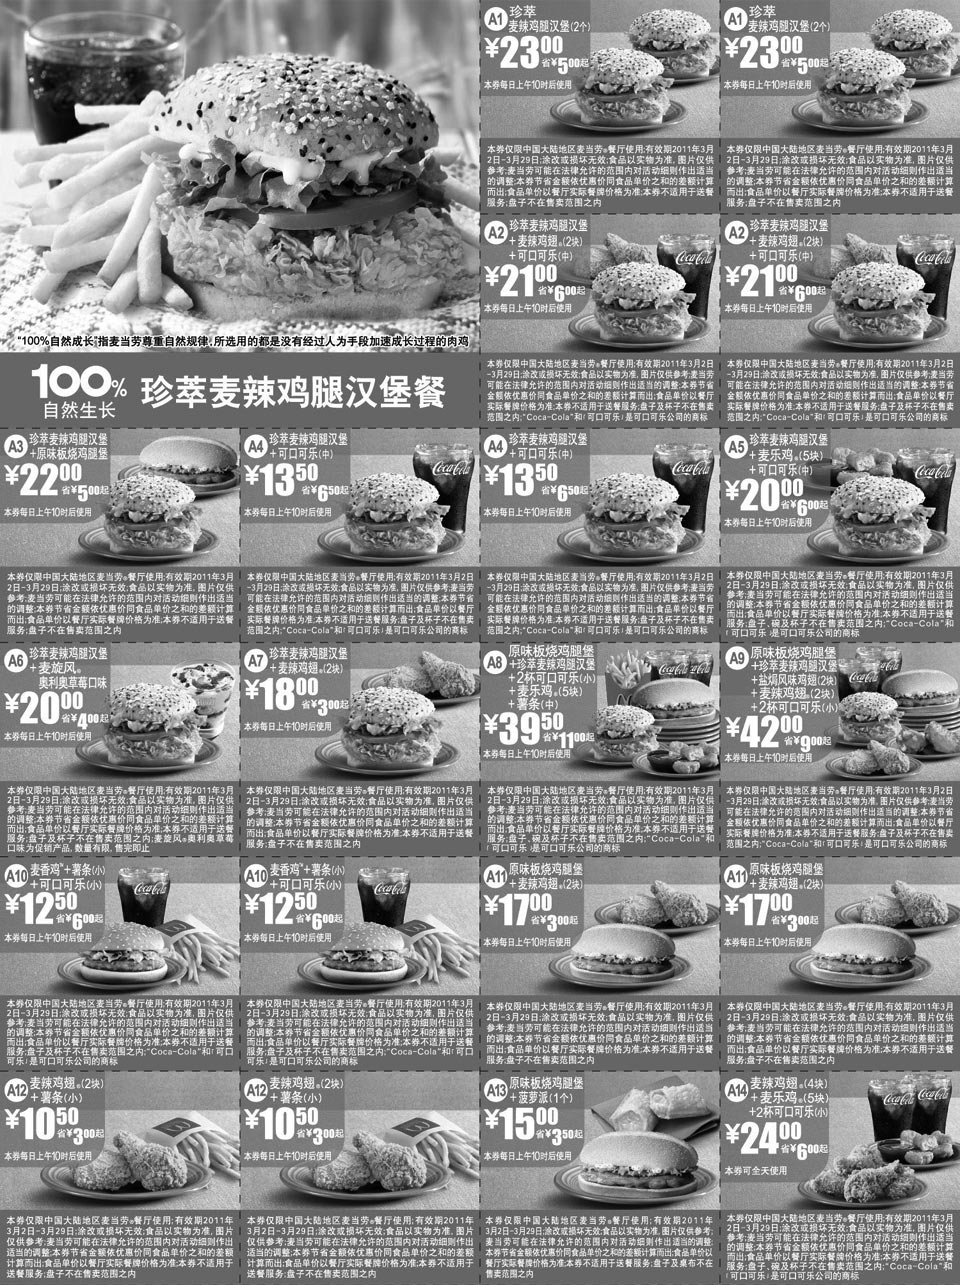 黑白优惠券图片：麦当劳100%自然生长珍萃麦辣鸡腿汉堡餐优惠券2011年3月整张打印版本 - www.5ikfc.com